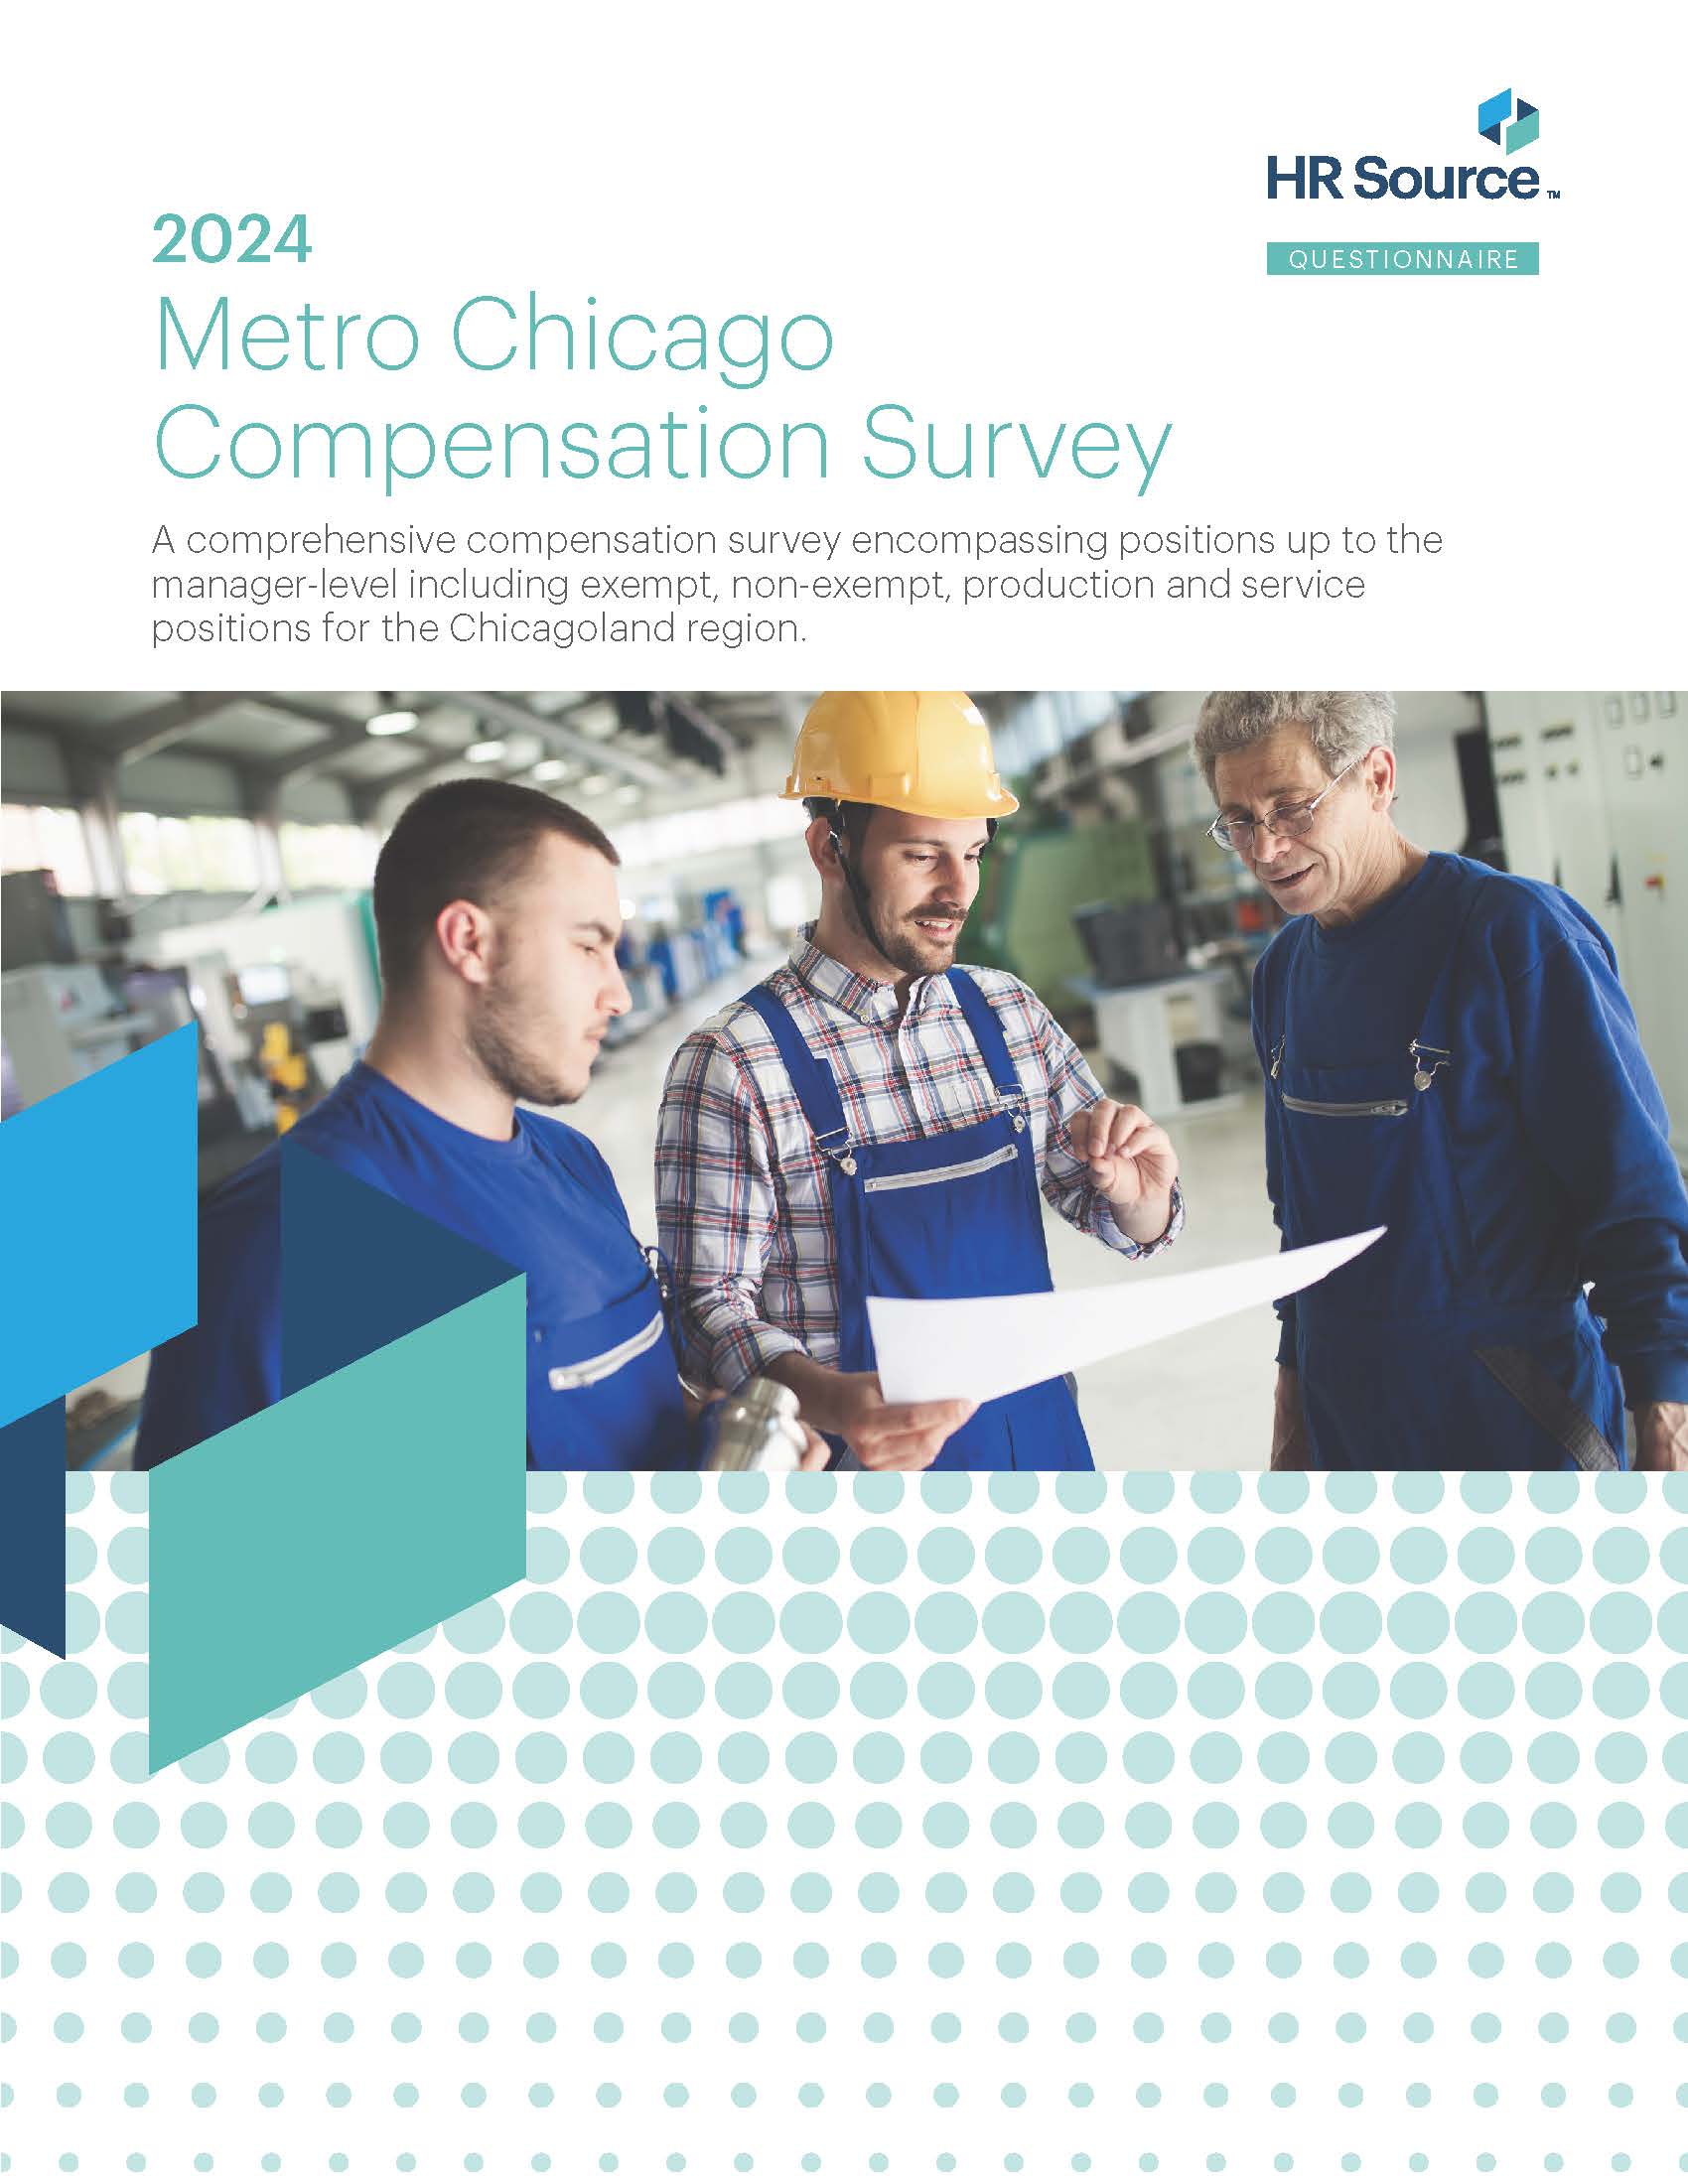 2024 Metro Chicago Compensation Survey Questionnaire Cover